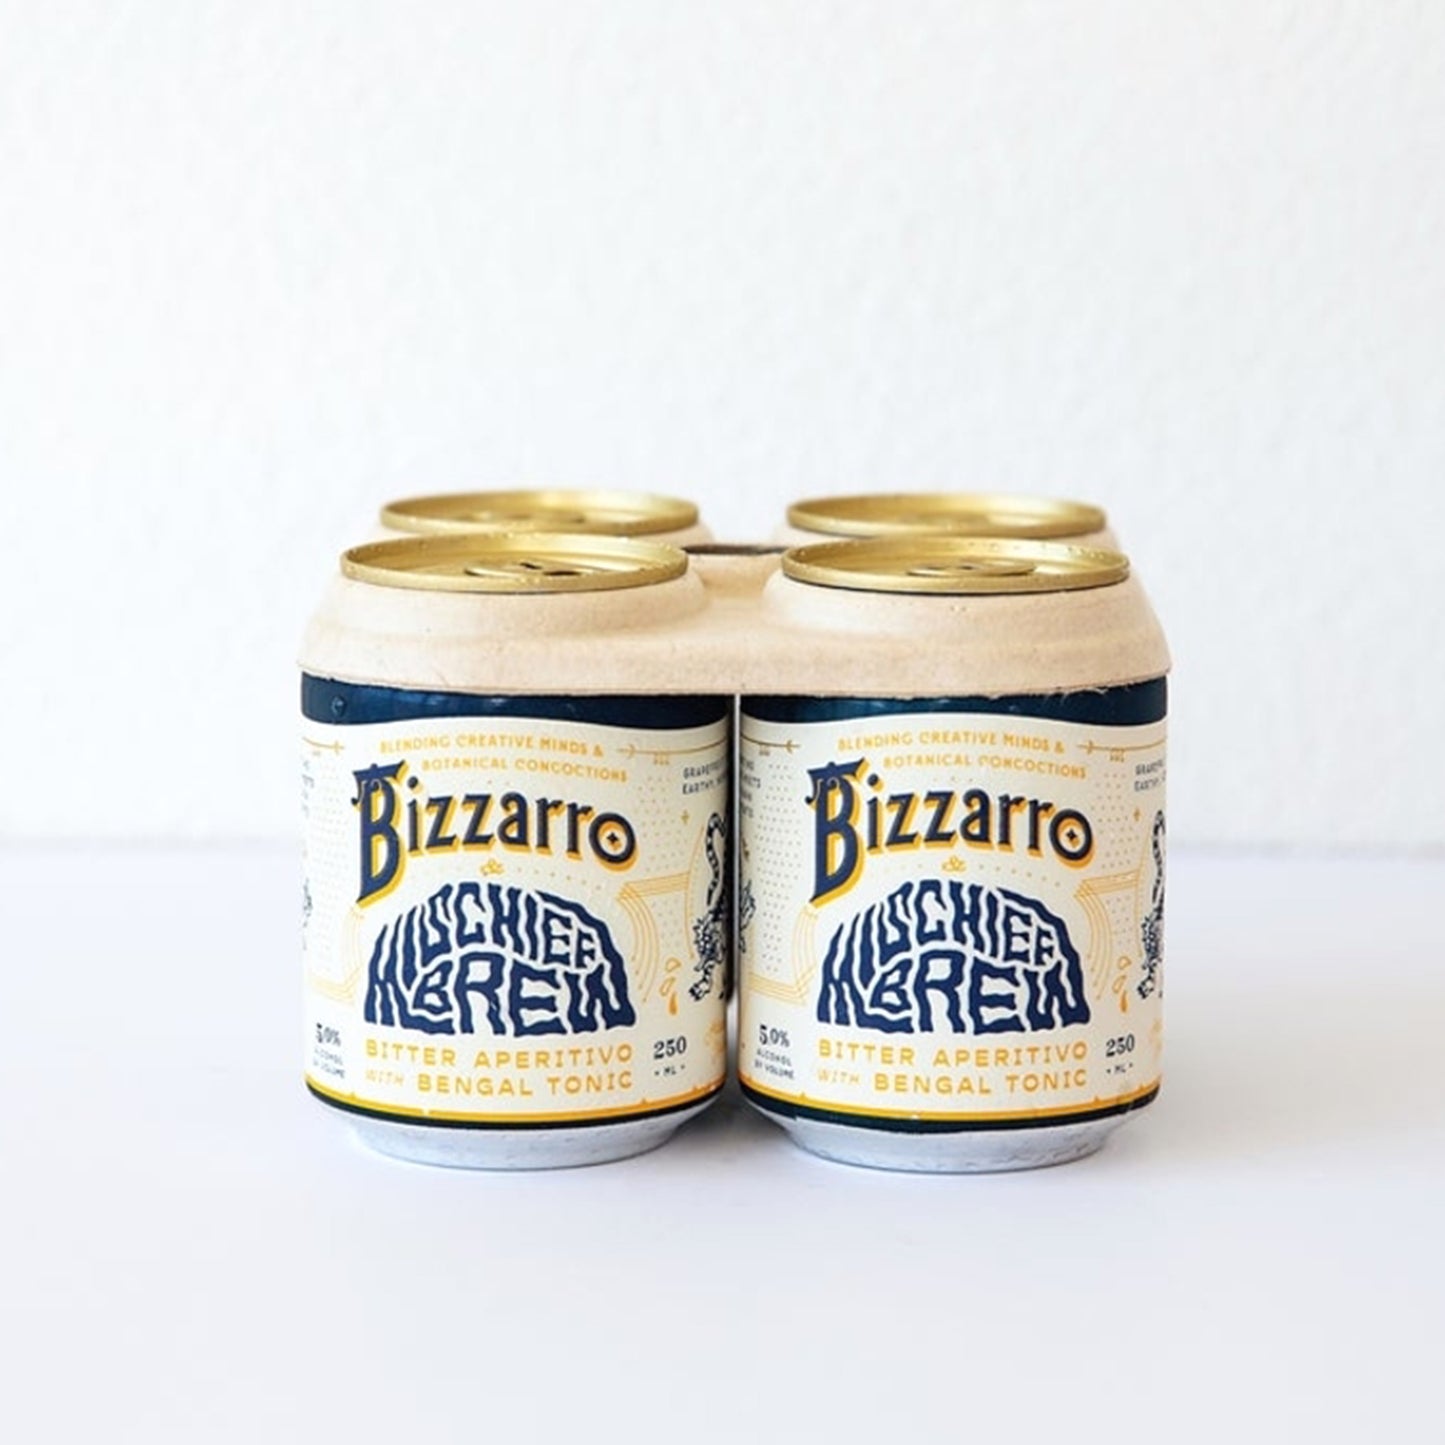 Delinquente Bizzarro & Mischief Brew Tonic Can (250 ml) - 24 Cans